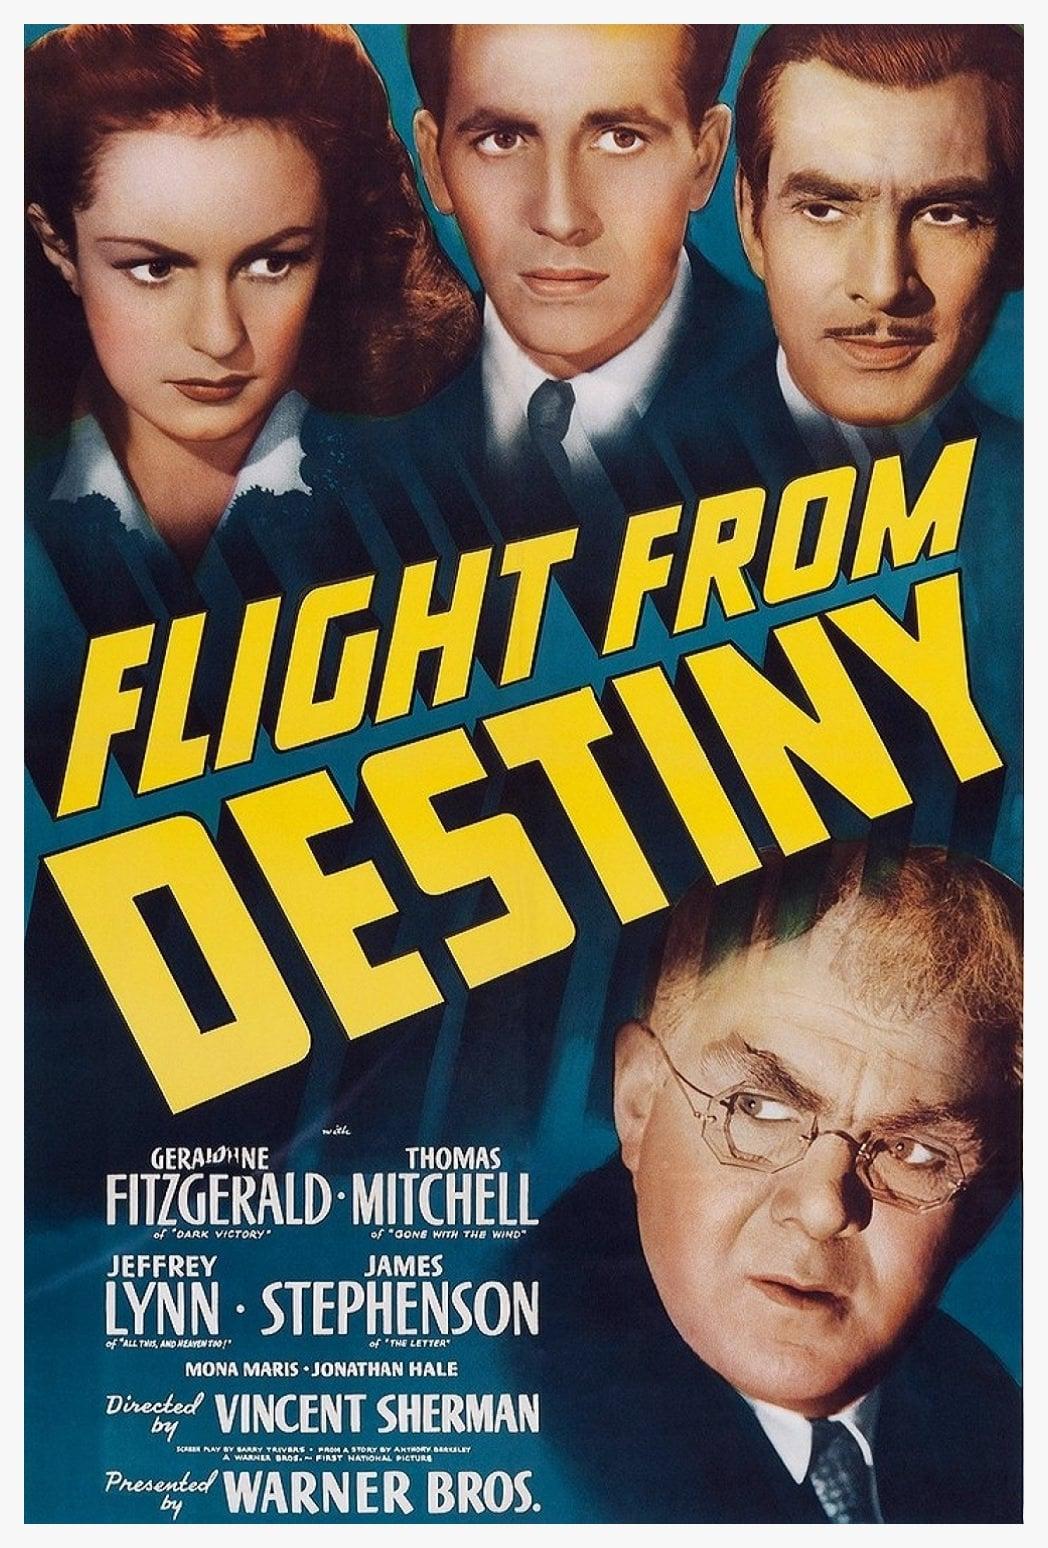 Flight from Destiny poster